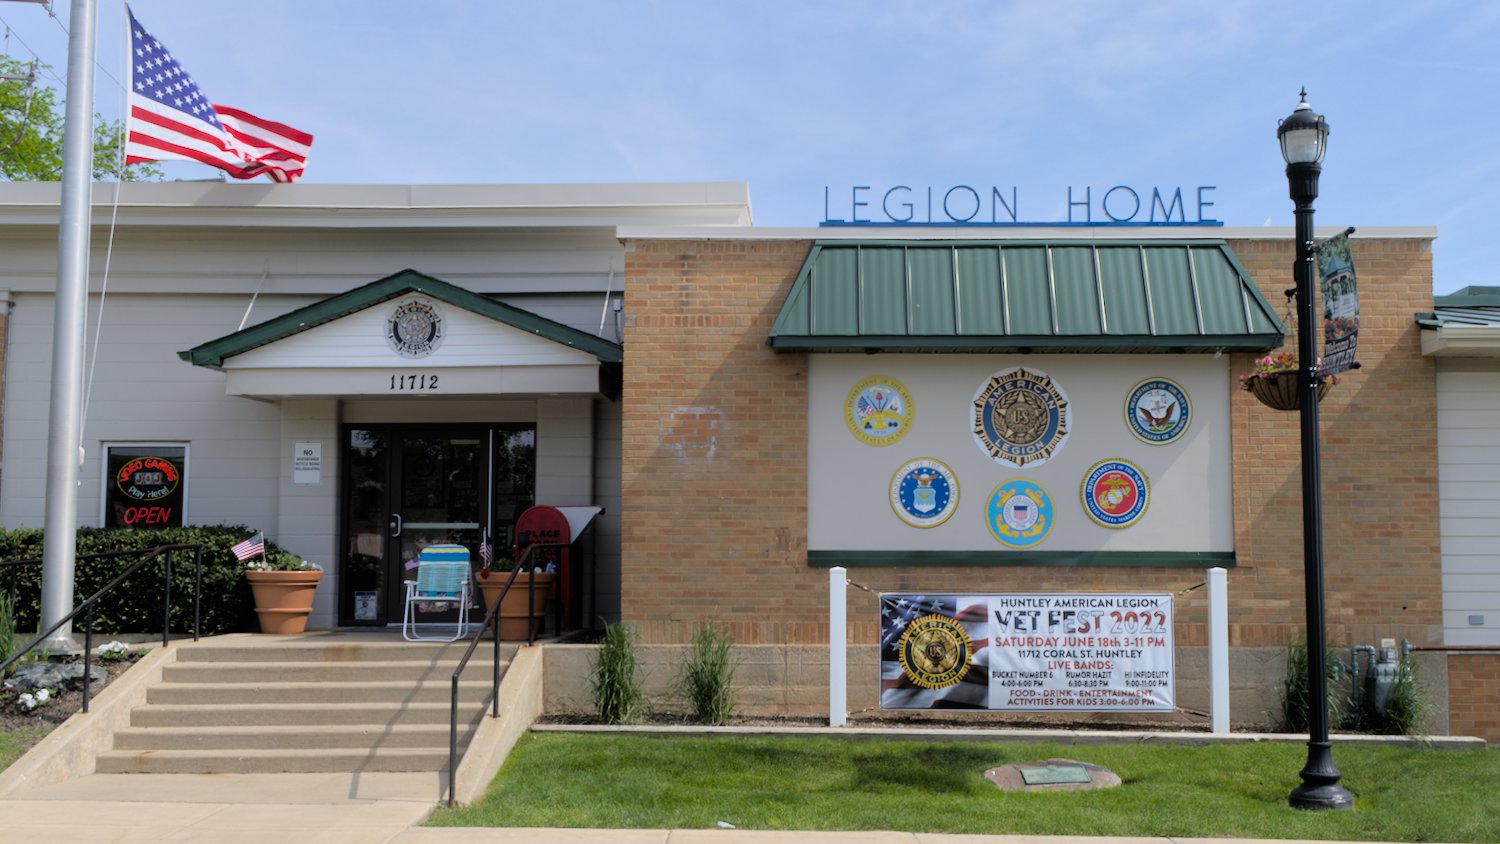 American Legion hall in Huntley, IL.